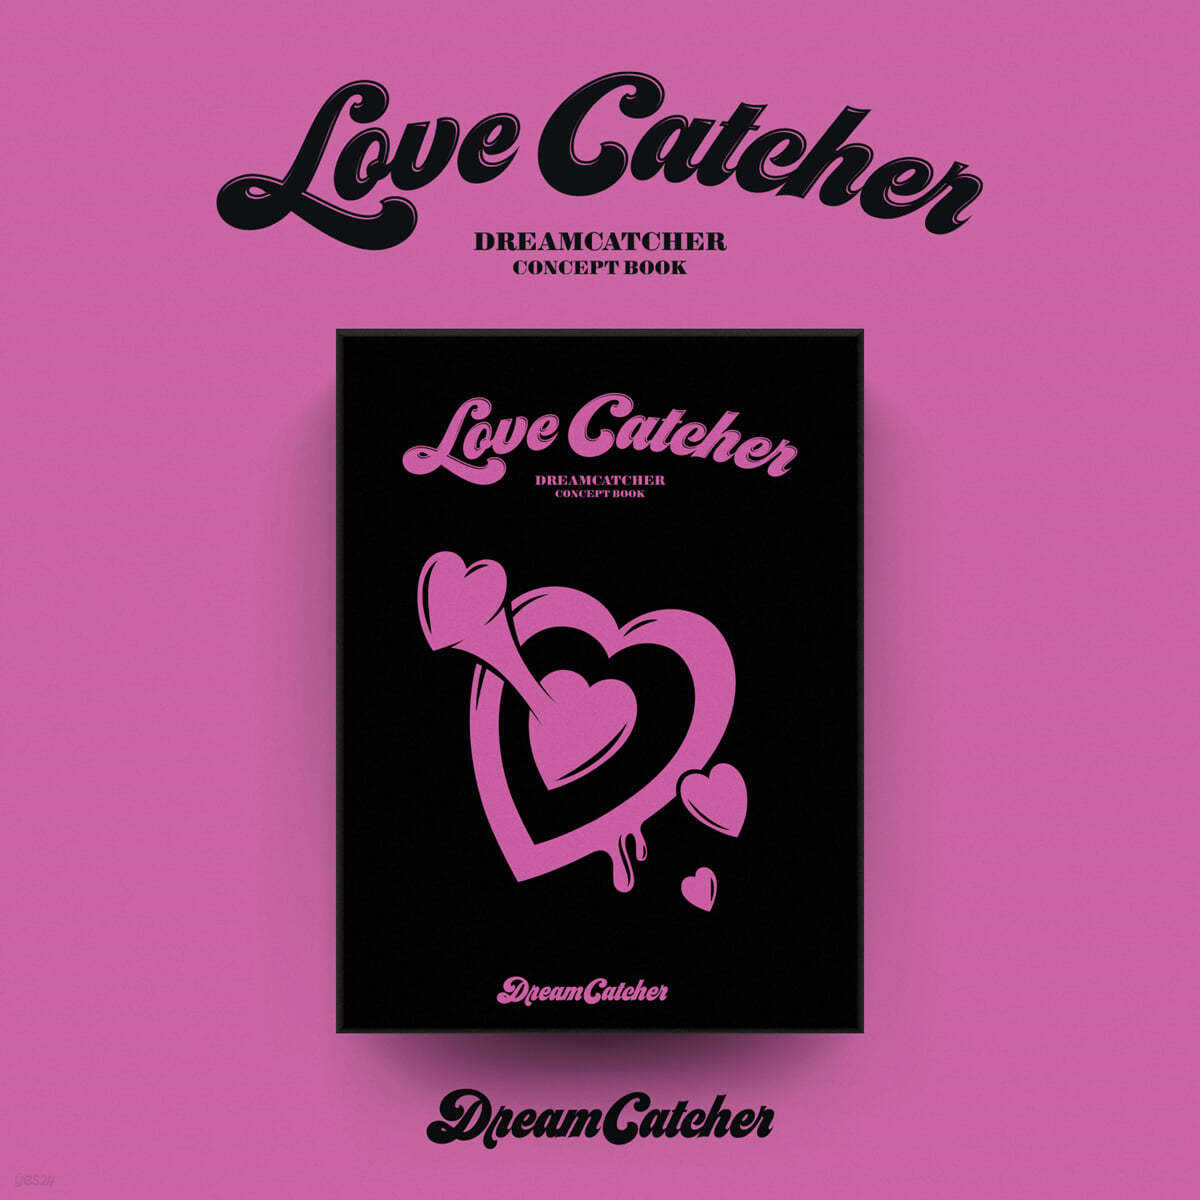 드림캐쳐 (Dreamcatcher) - 드림캐쳐 컨셉북 [Love Catcher ver.]